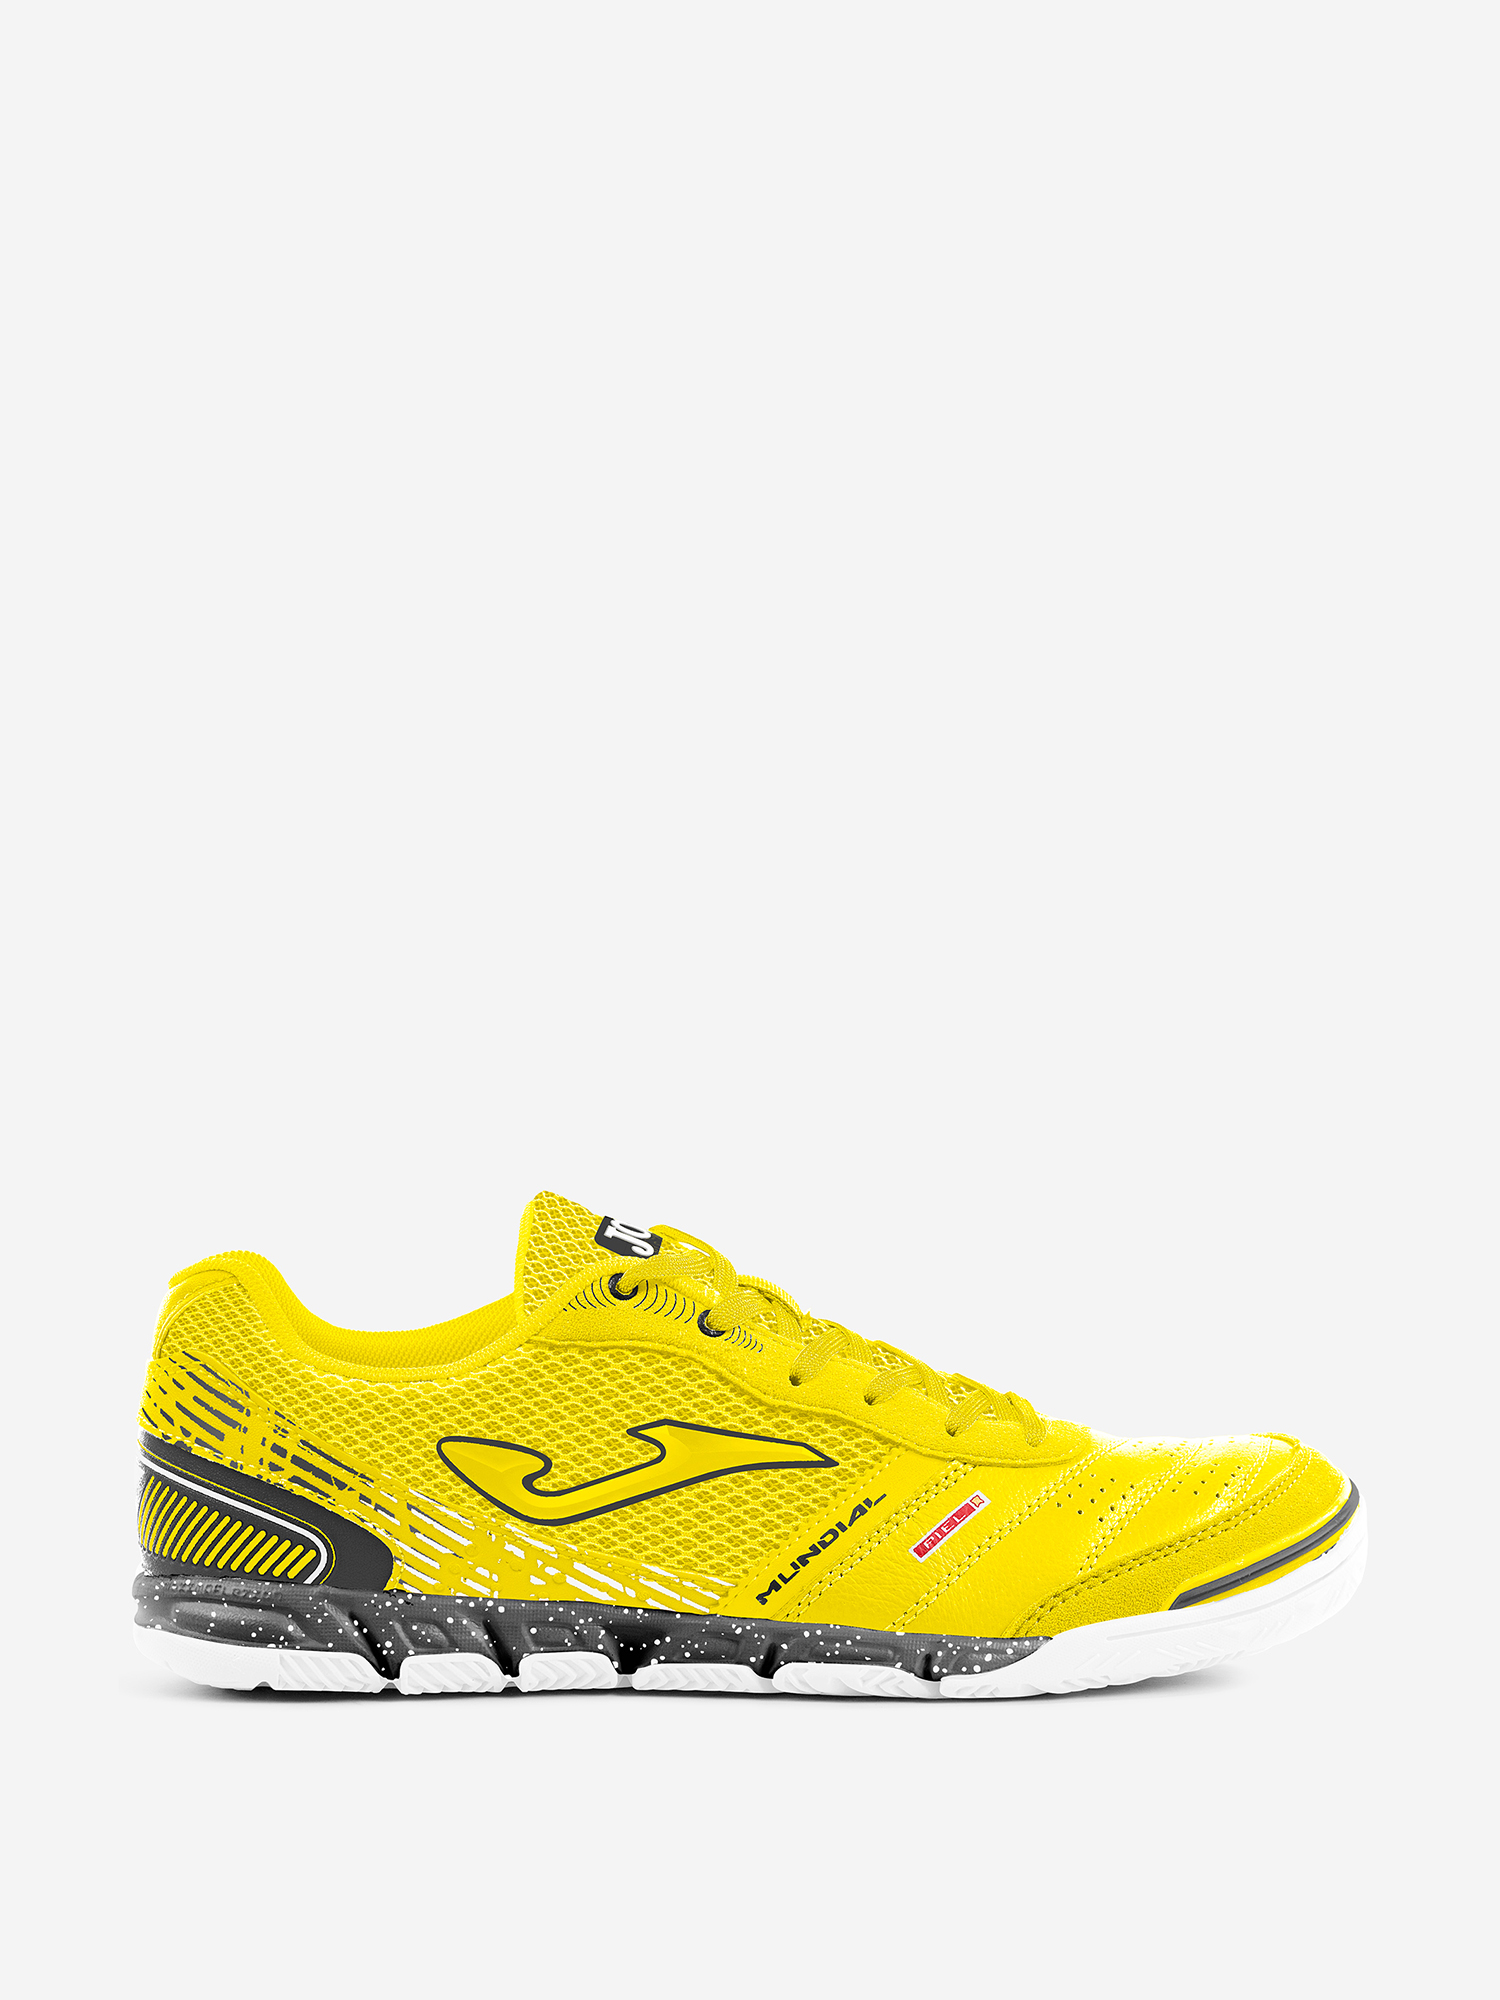 Футзальная обувь Joma MUNDIAL, Желтый футзальная обувь joma mundial желтый